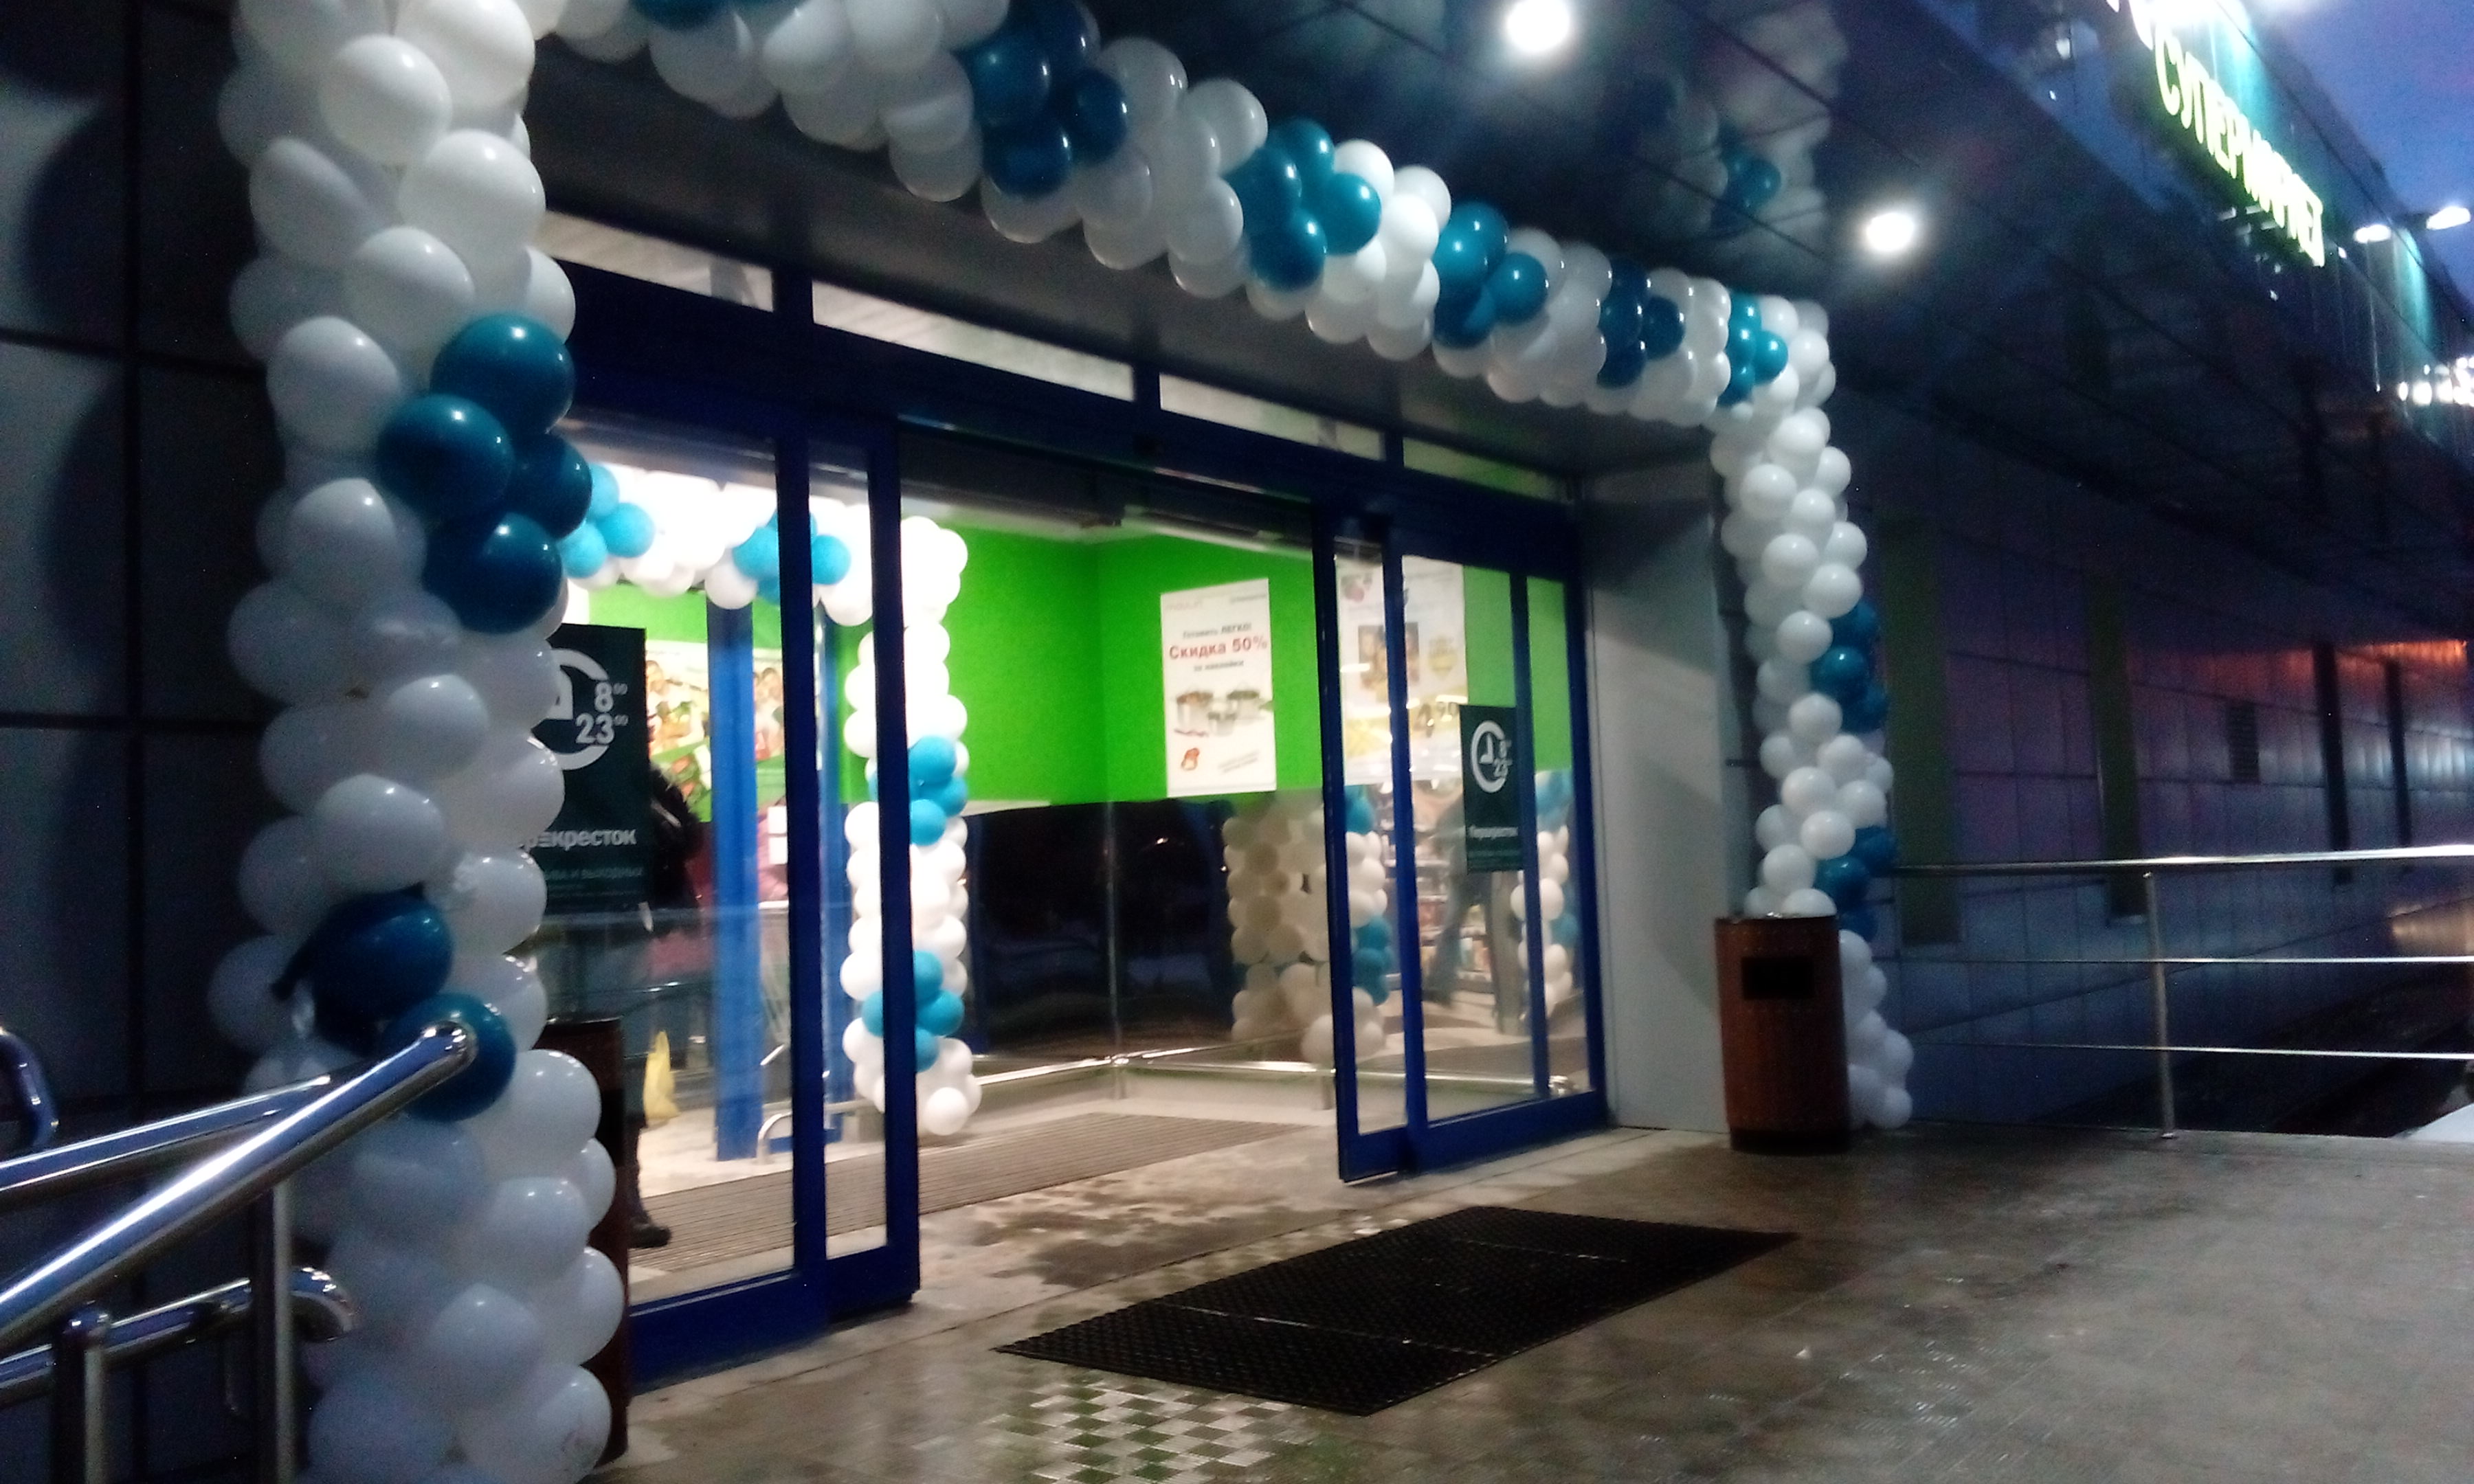  В Митино открылся магазин торговой сети «Перекресток»